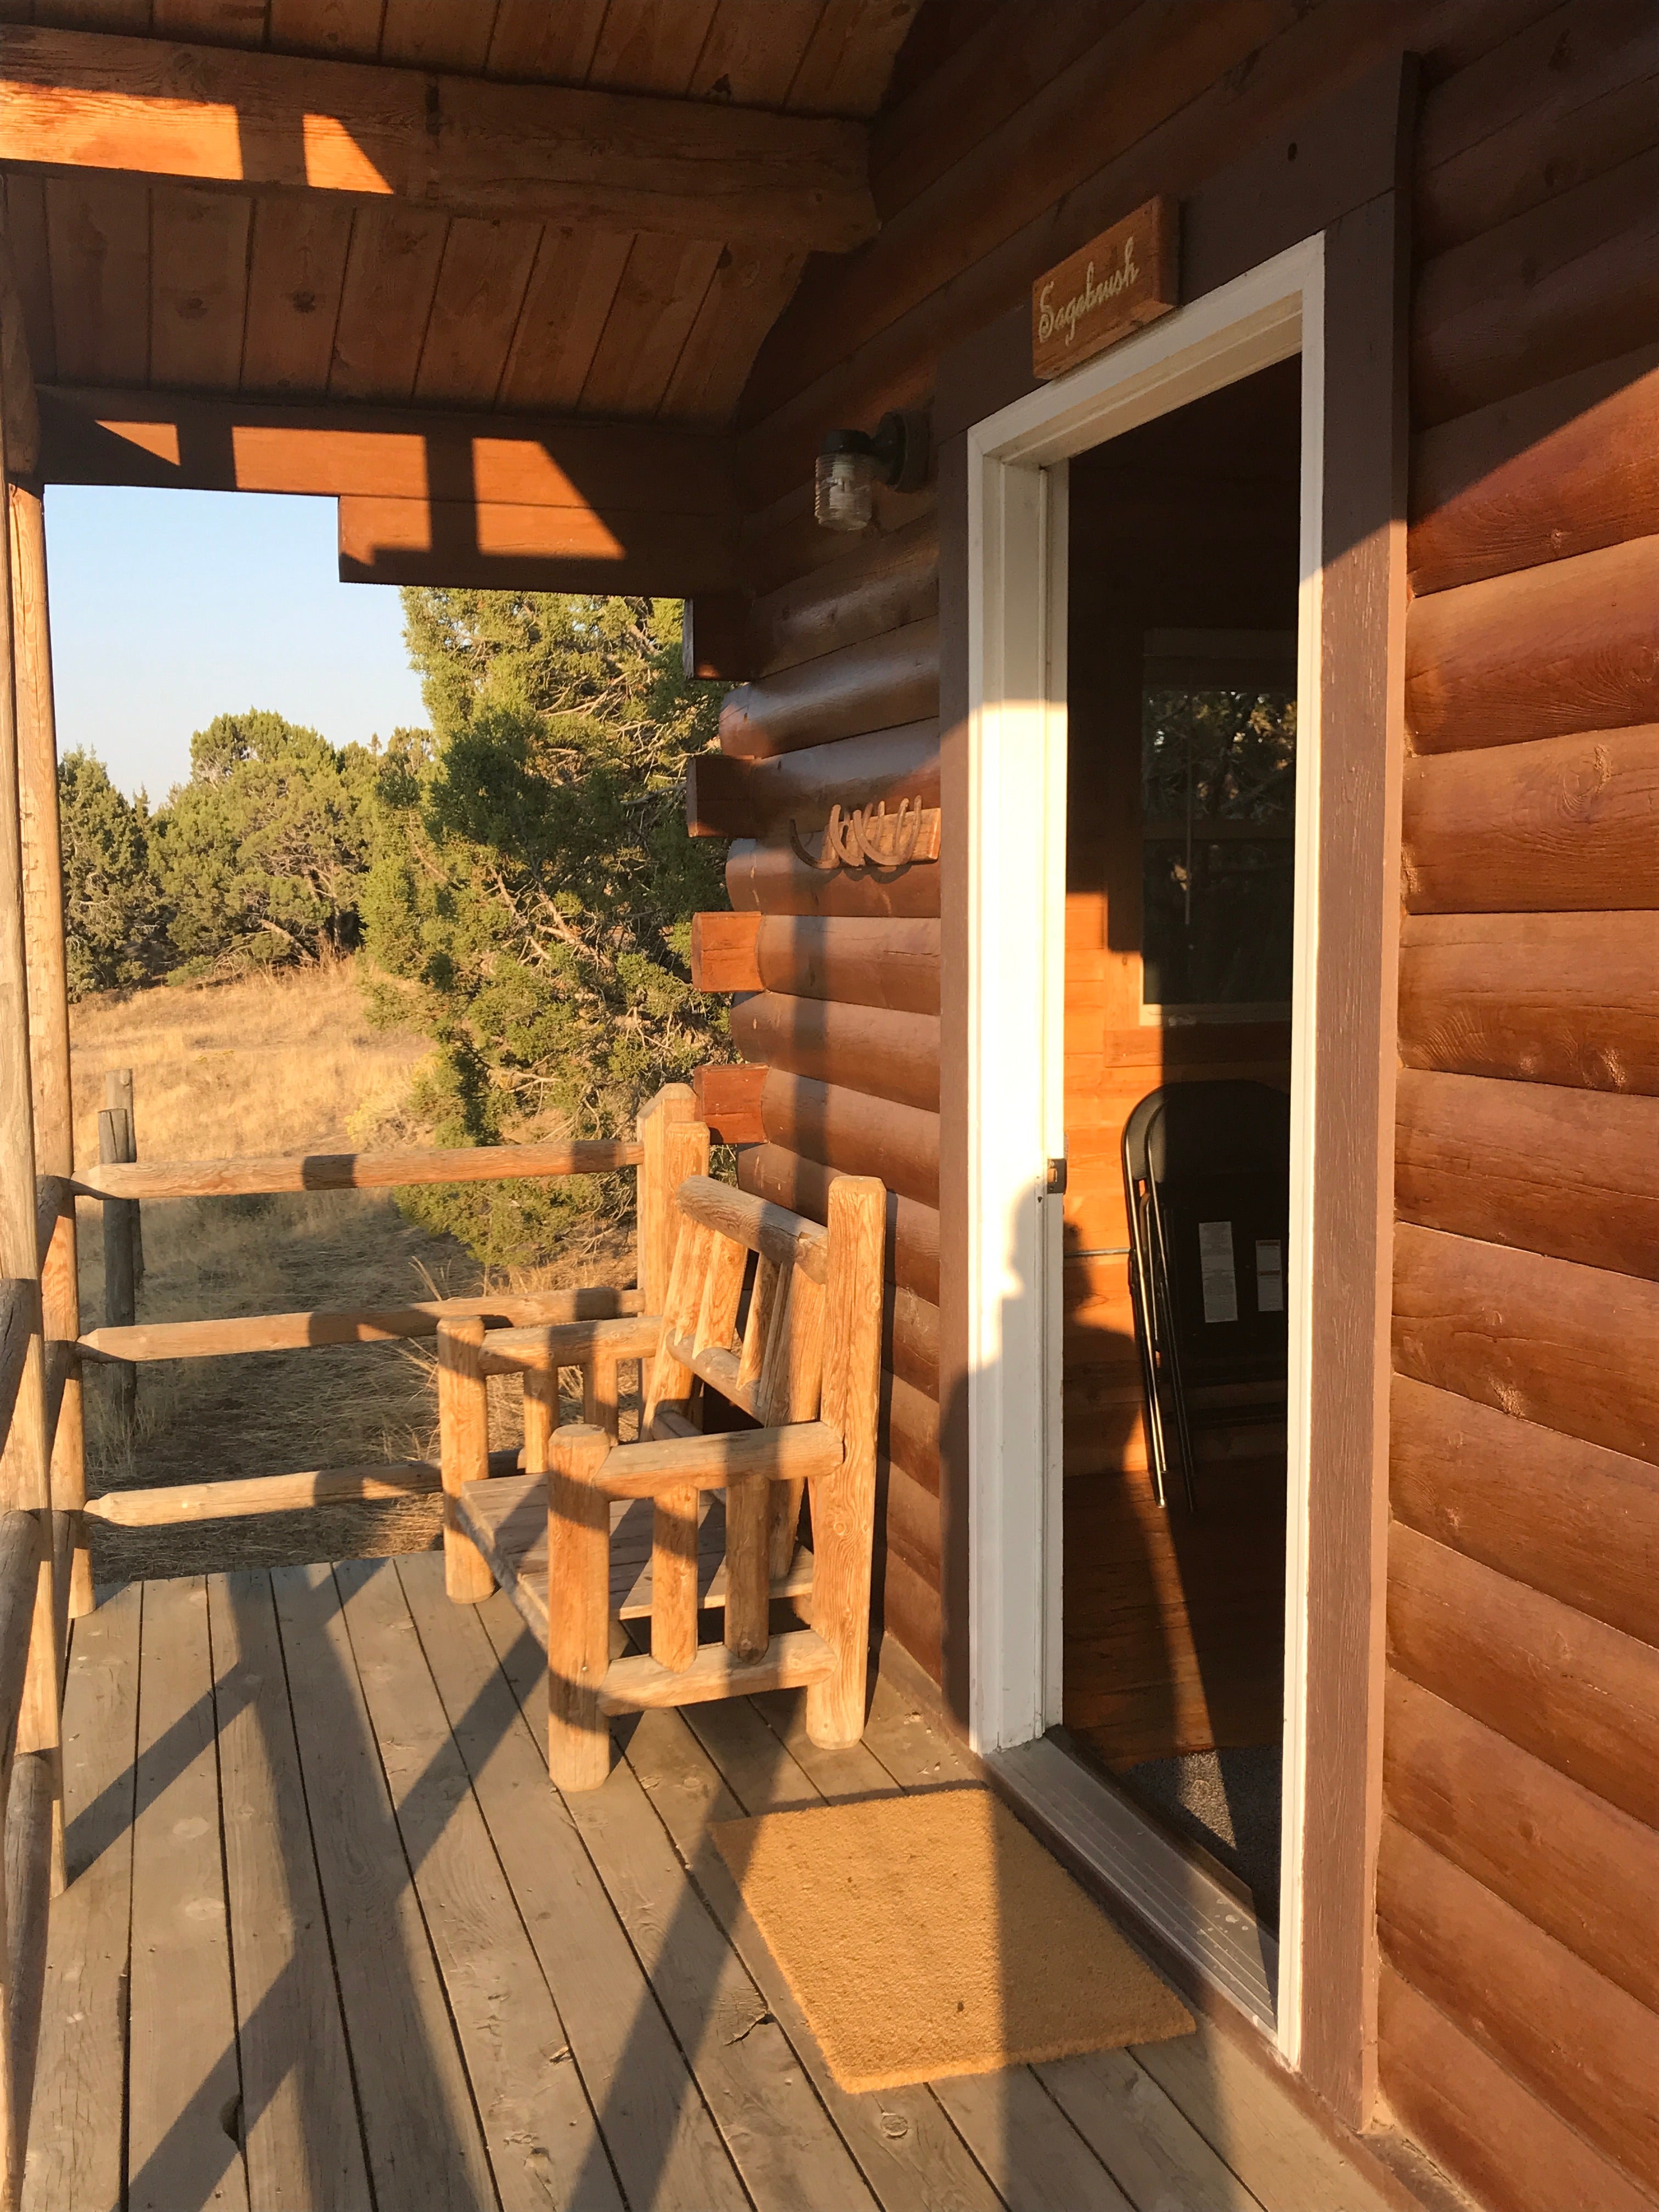 The sagebrush cabin